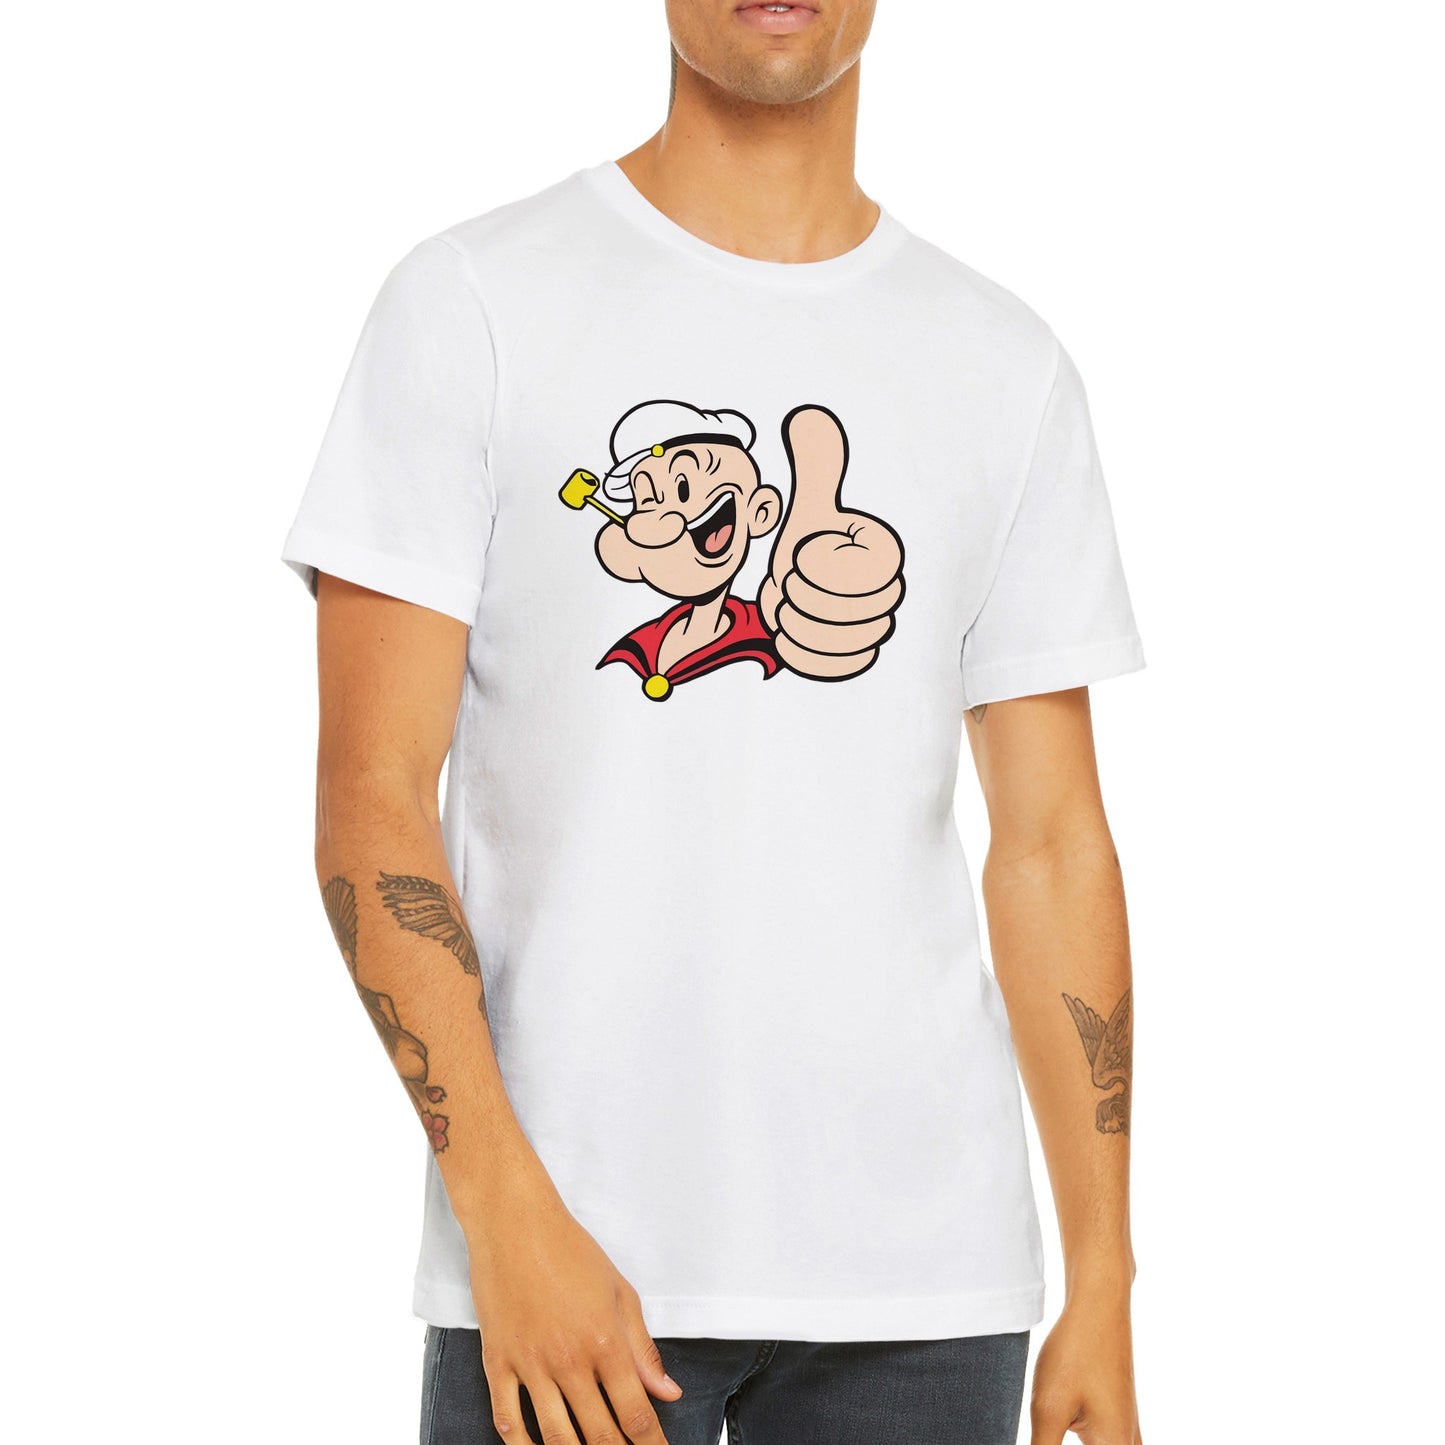 Popeye T-shirt - Popeye Thumbs Up Artwork - Premium Unisex T-shirt